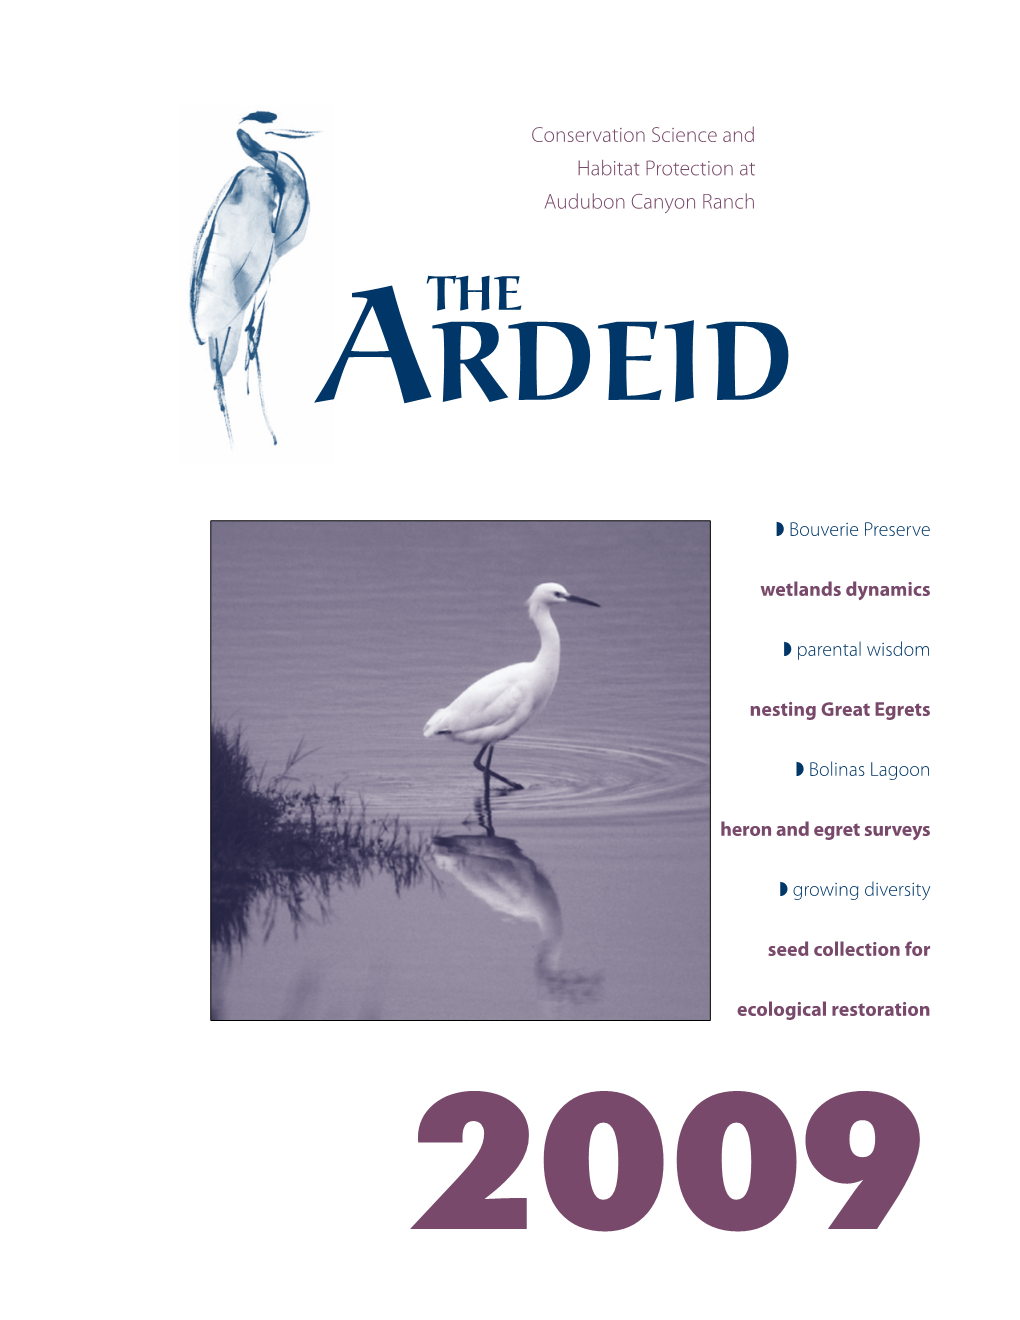 2009 the Ardeid 2009